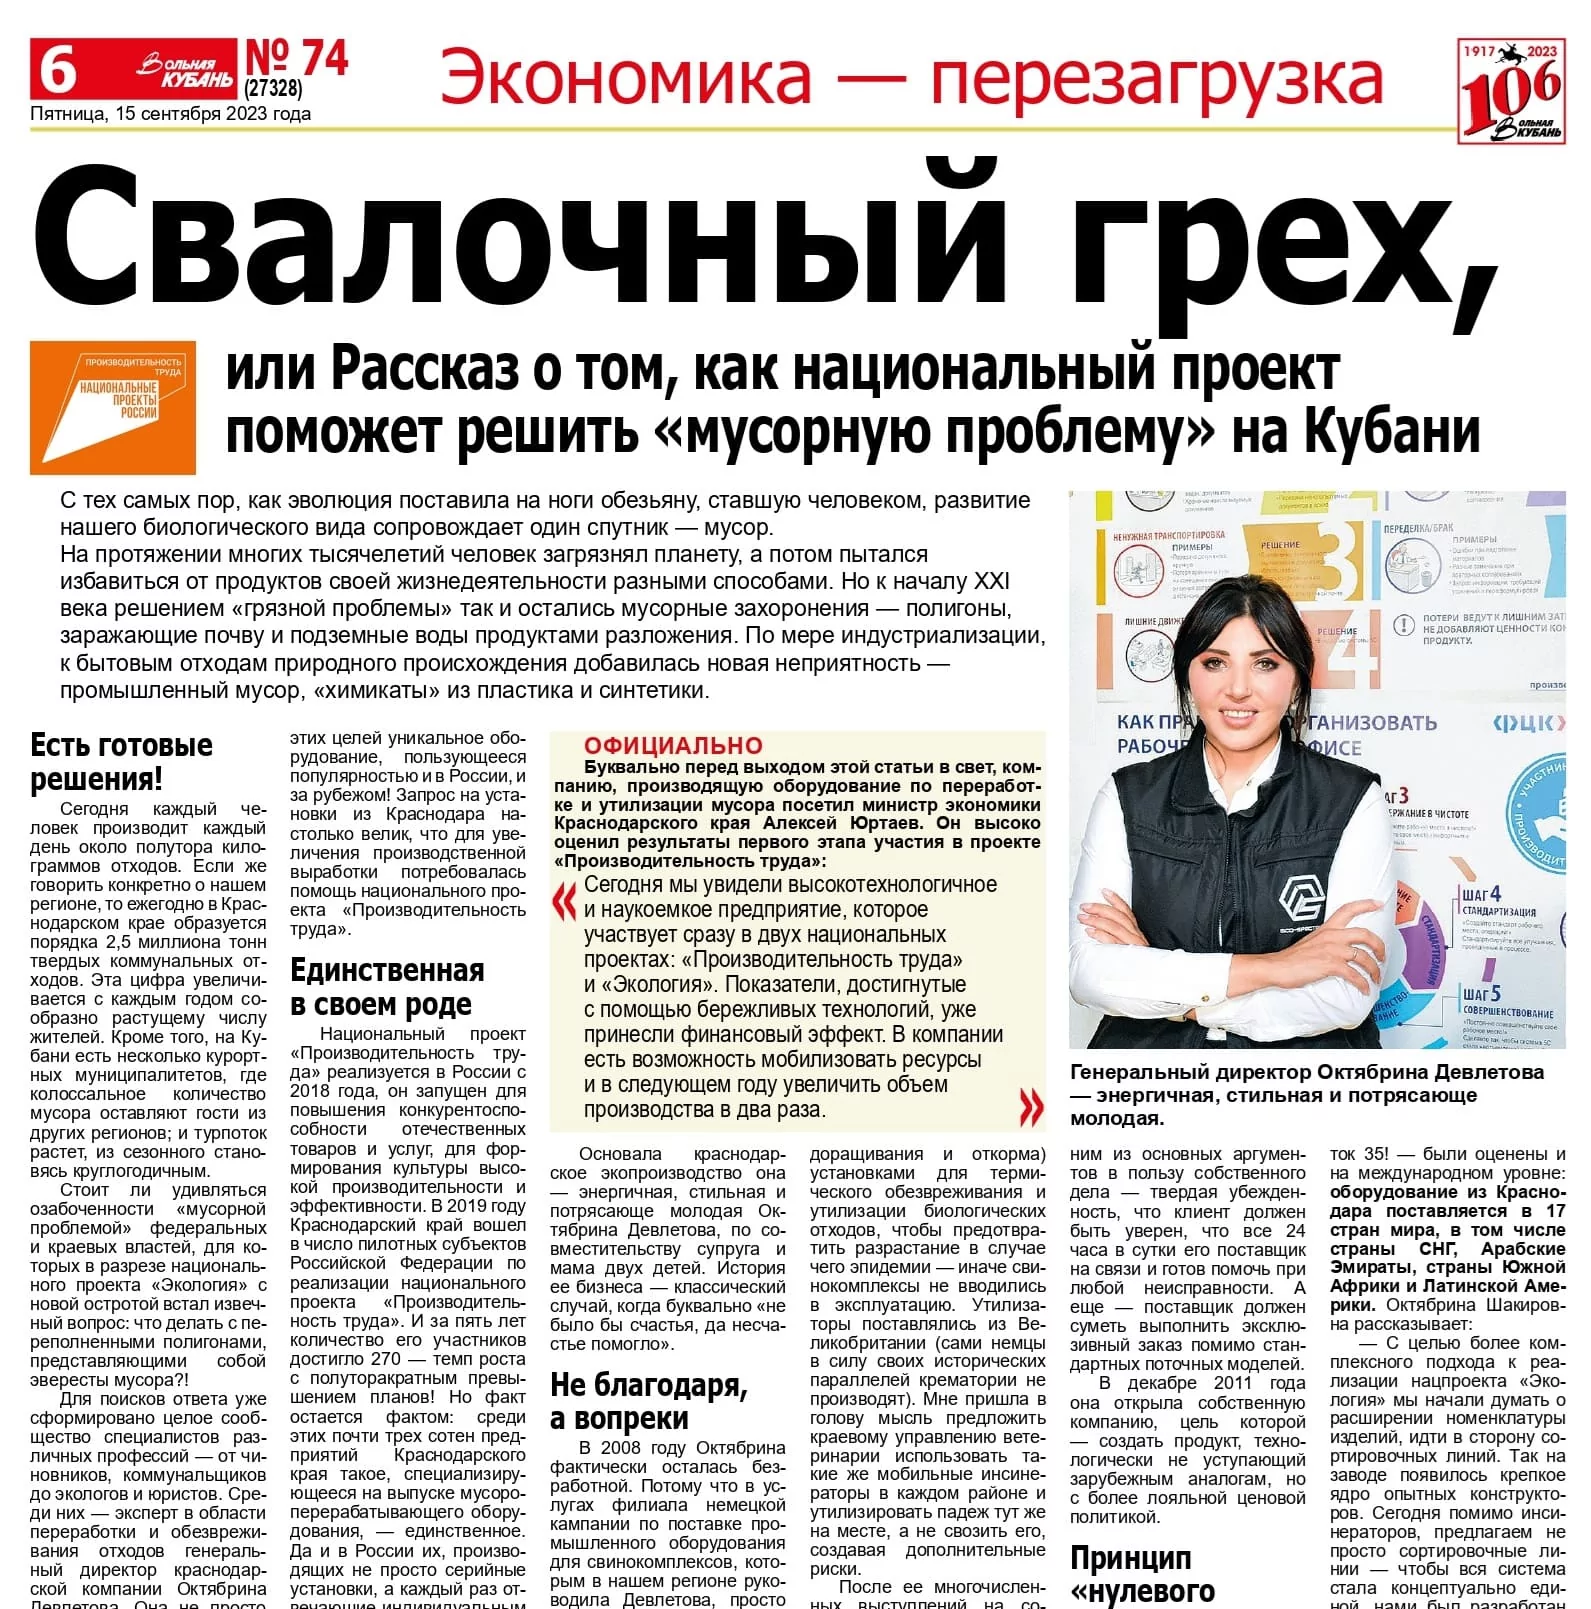 СМИ о Нас: Вышла статья о компании Эко-Спектрум в газете "Вольная Кубань"